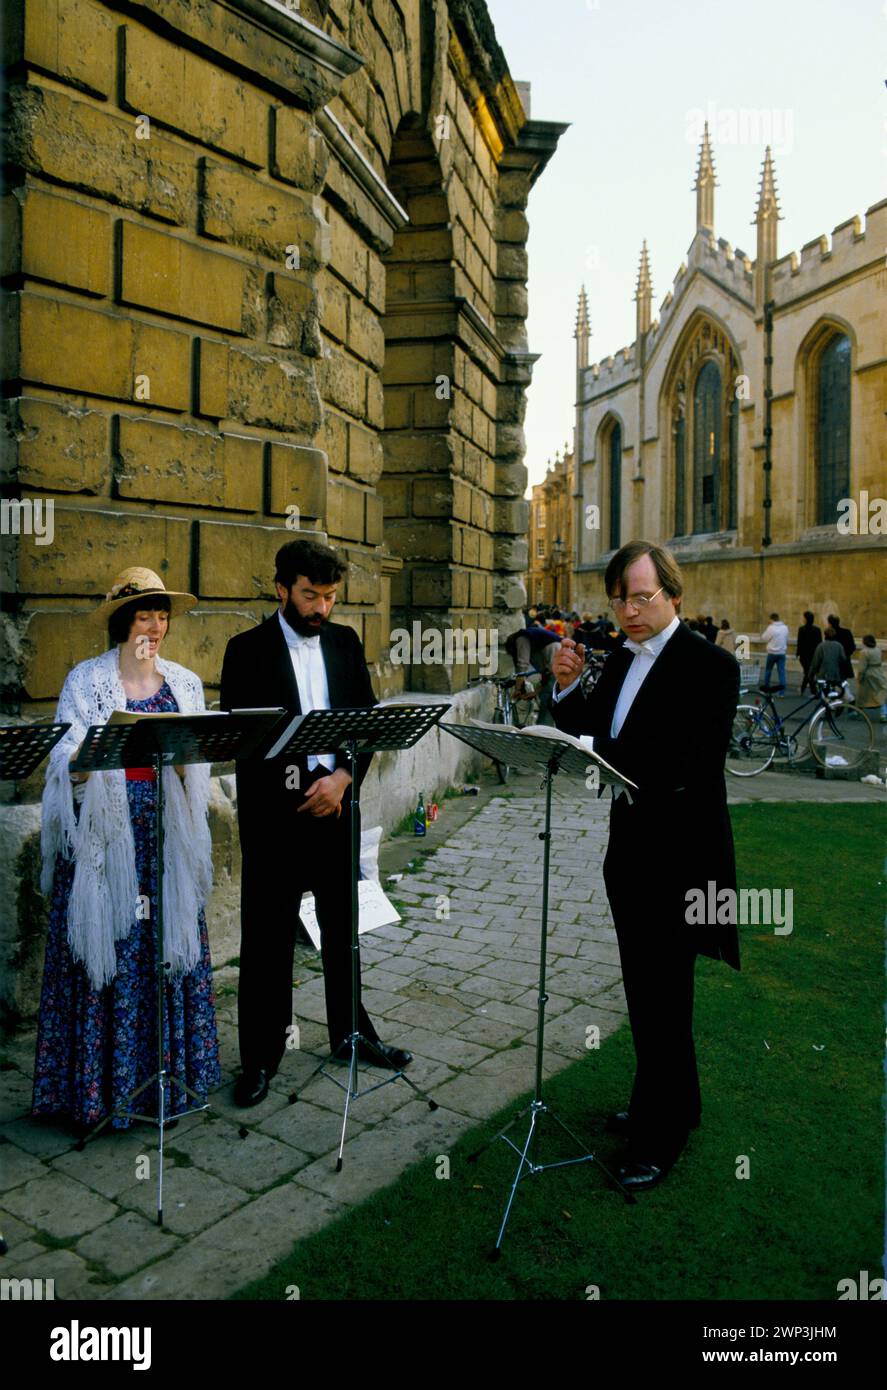 Il giorno di maggio all'alba, gli studenti universitari cantano madrigali per celebrare l'arrivo della primavera. Oxford, Oxfordshire, Inghilterra 1 maggio 1997 1970s HOMER SYKES Foto Stock